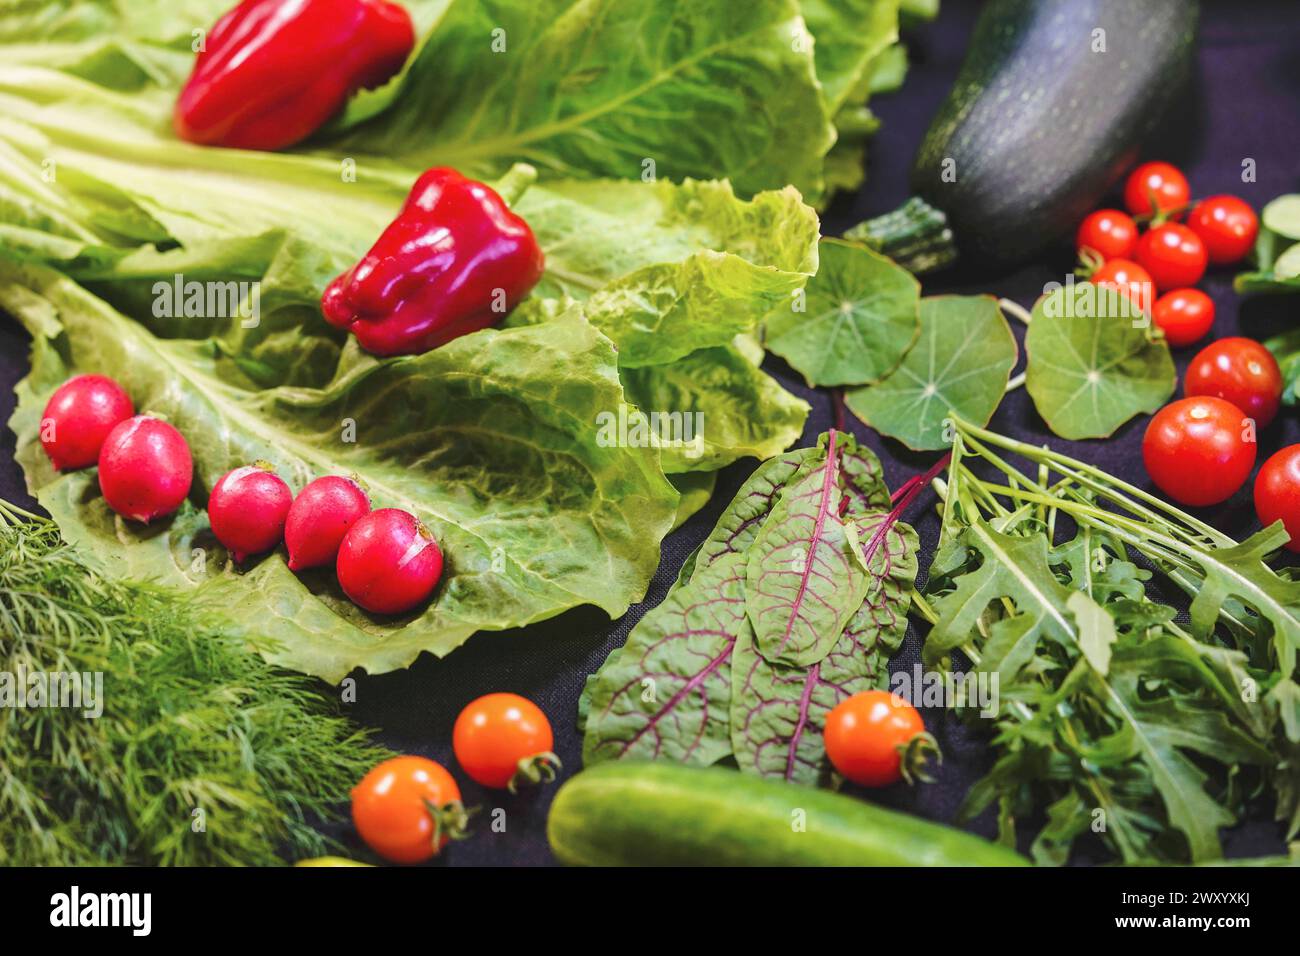 Légumes récoltés dans le jardin : poivrons, concombre, laitue, radis, tomate, salade roquette, mangold Banque D'Images